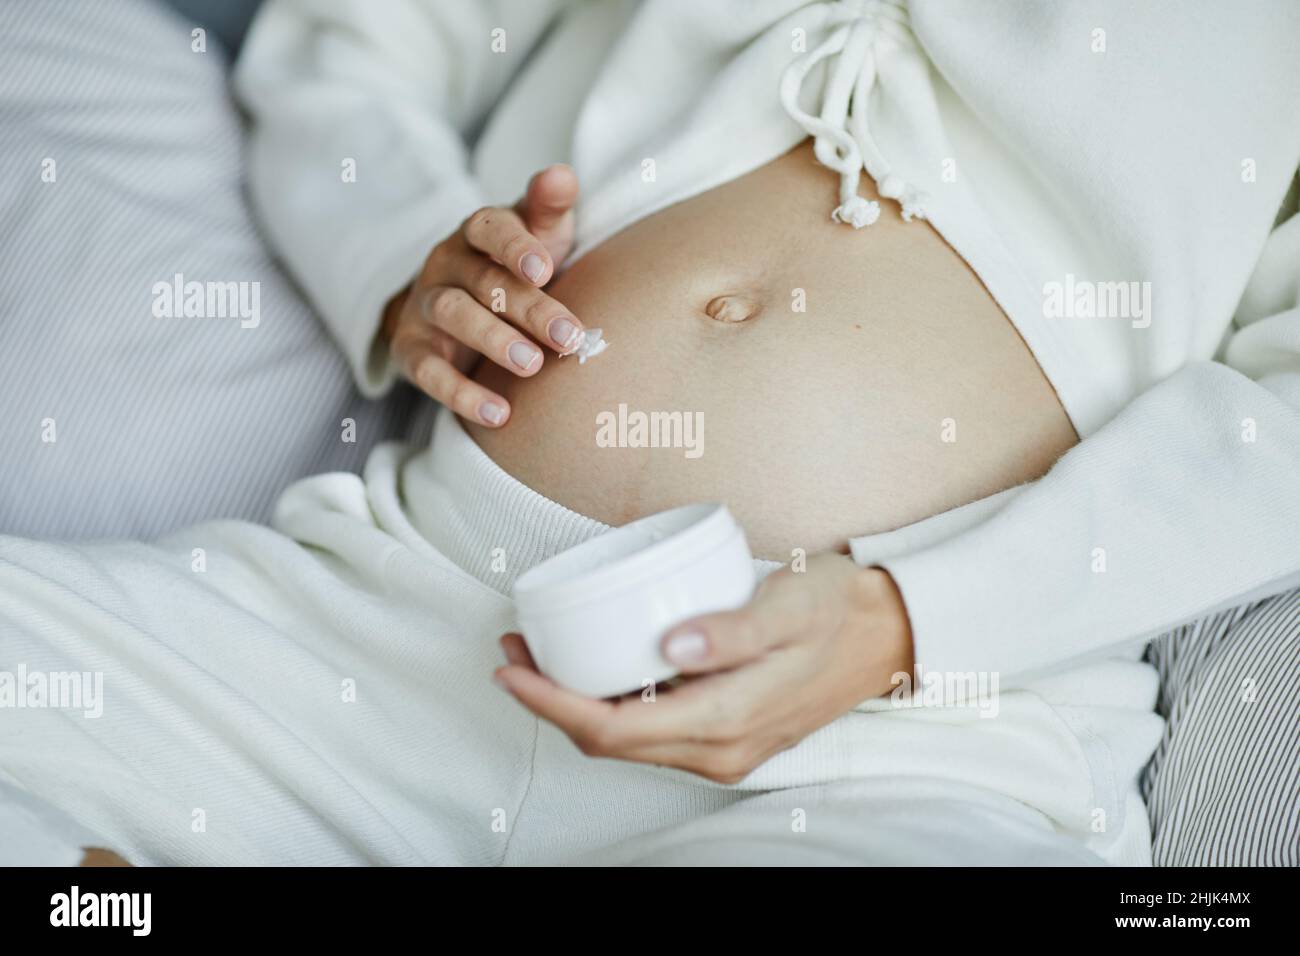 Primo piano di una giovane donna incinta che applica crema anti-stretch sul ventre durante la gravidanza Foto Stock